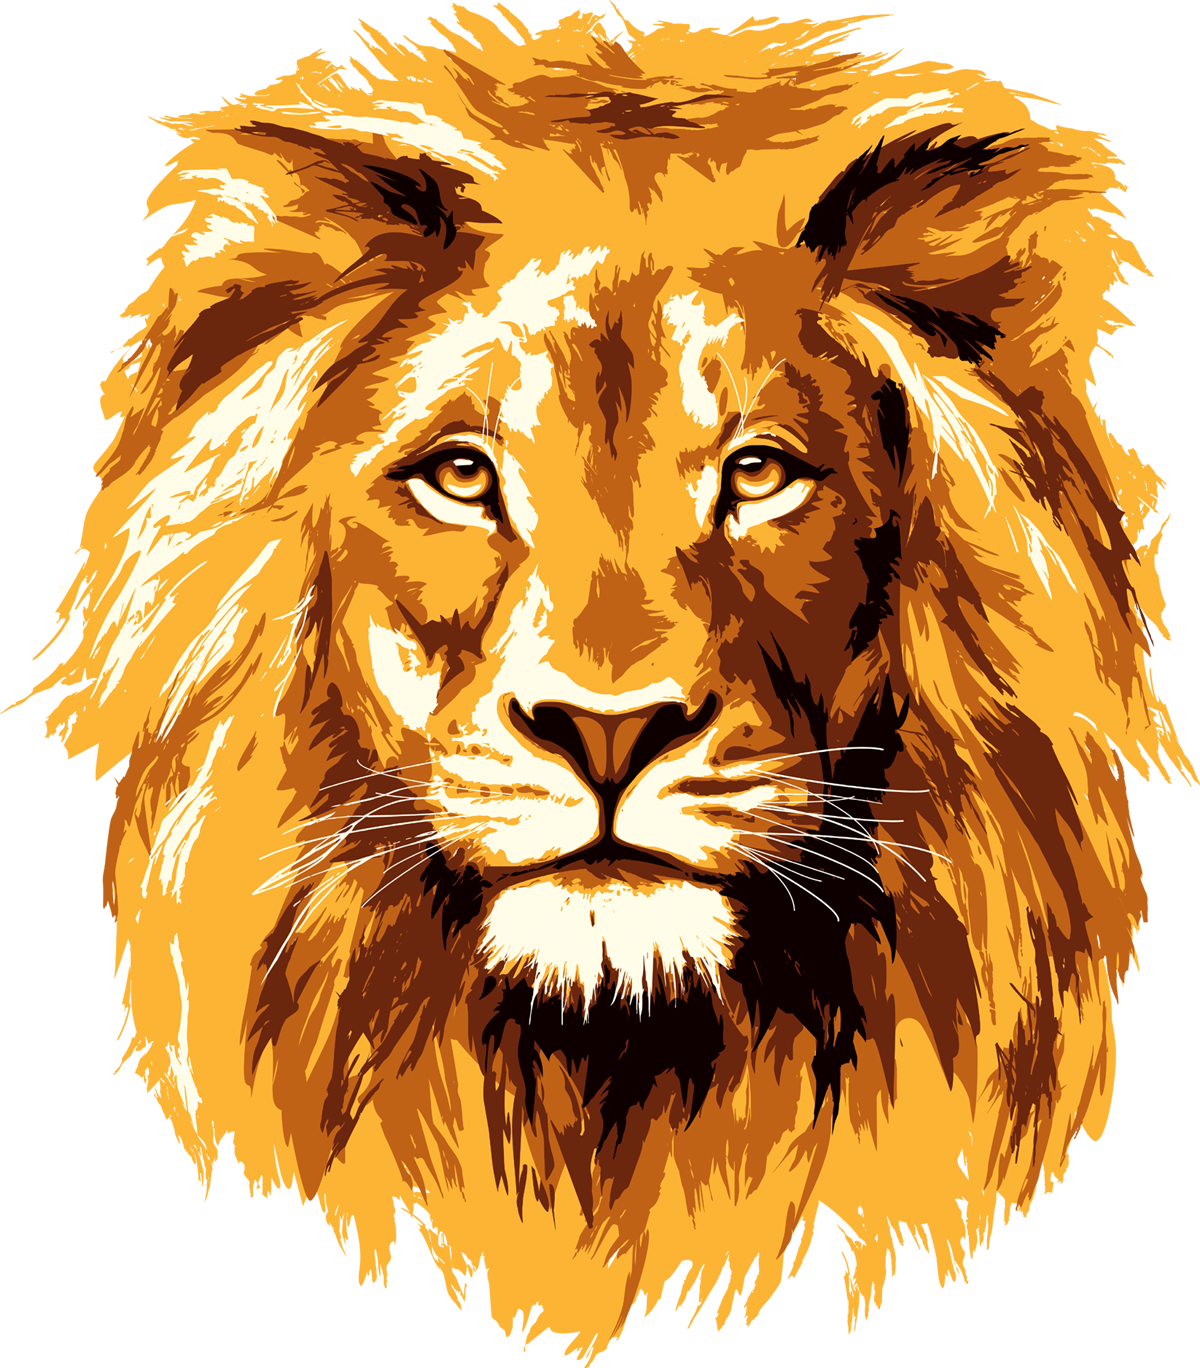 Lion clipart lion head, Lion lion head Transparent FREE for download on